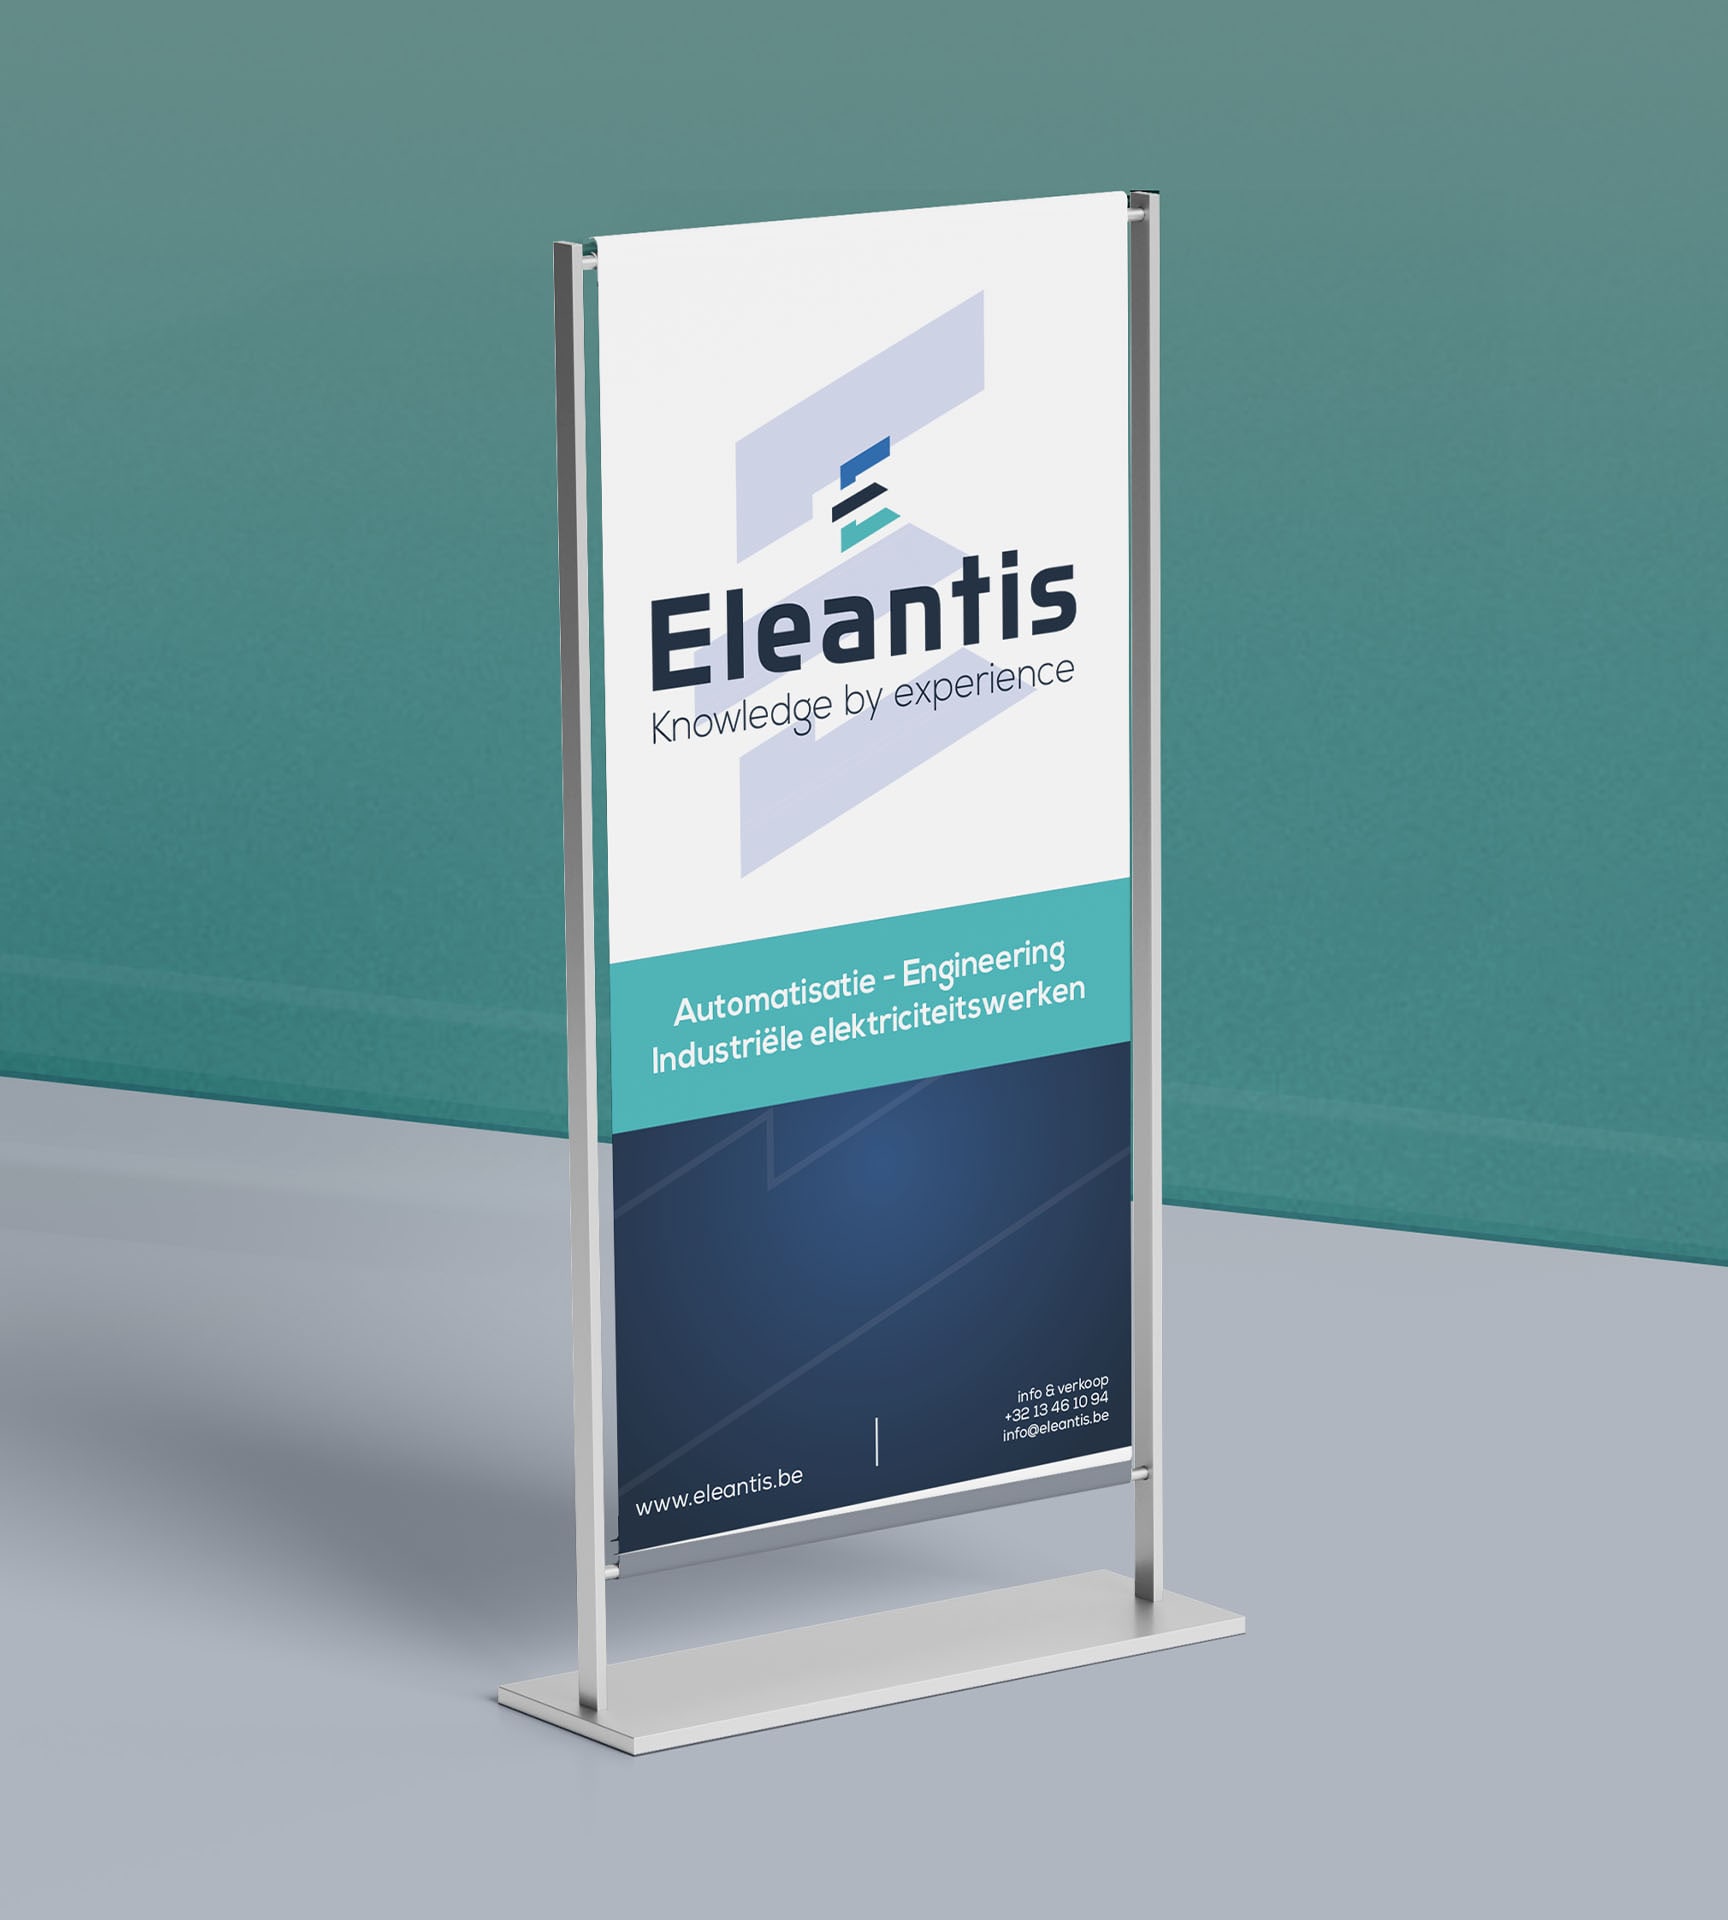 Eleantis_branding_rollup_banner